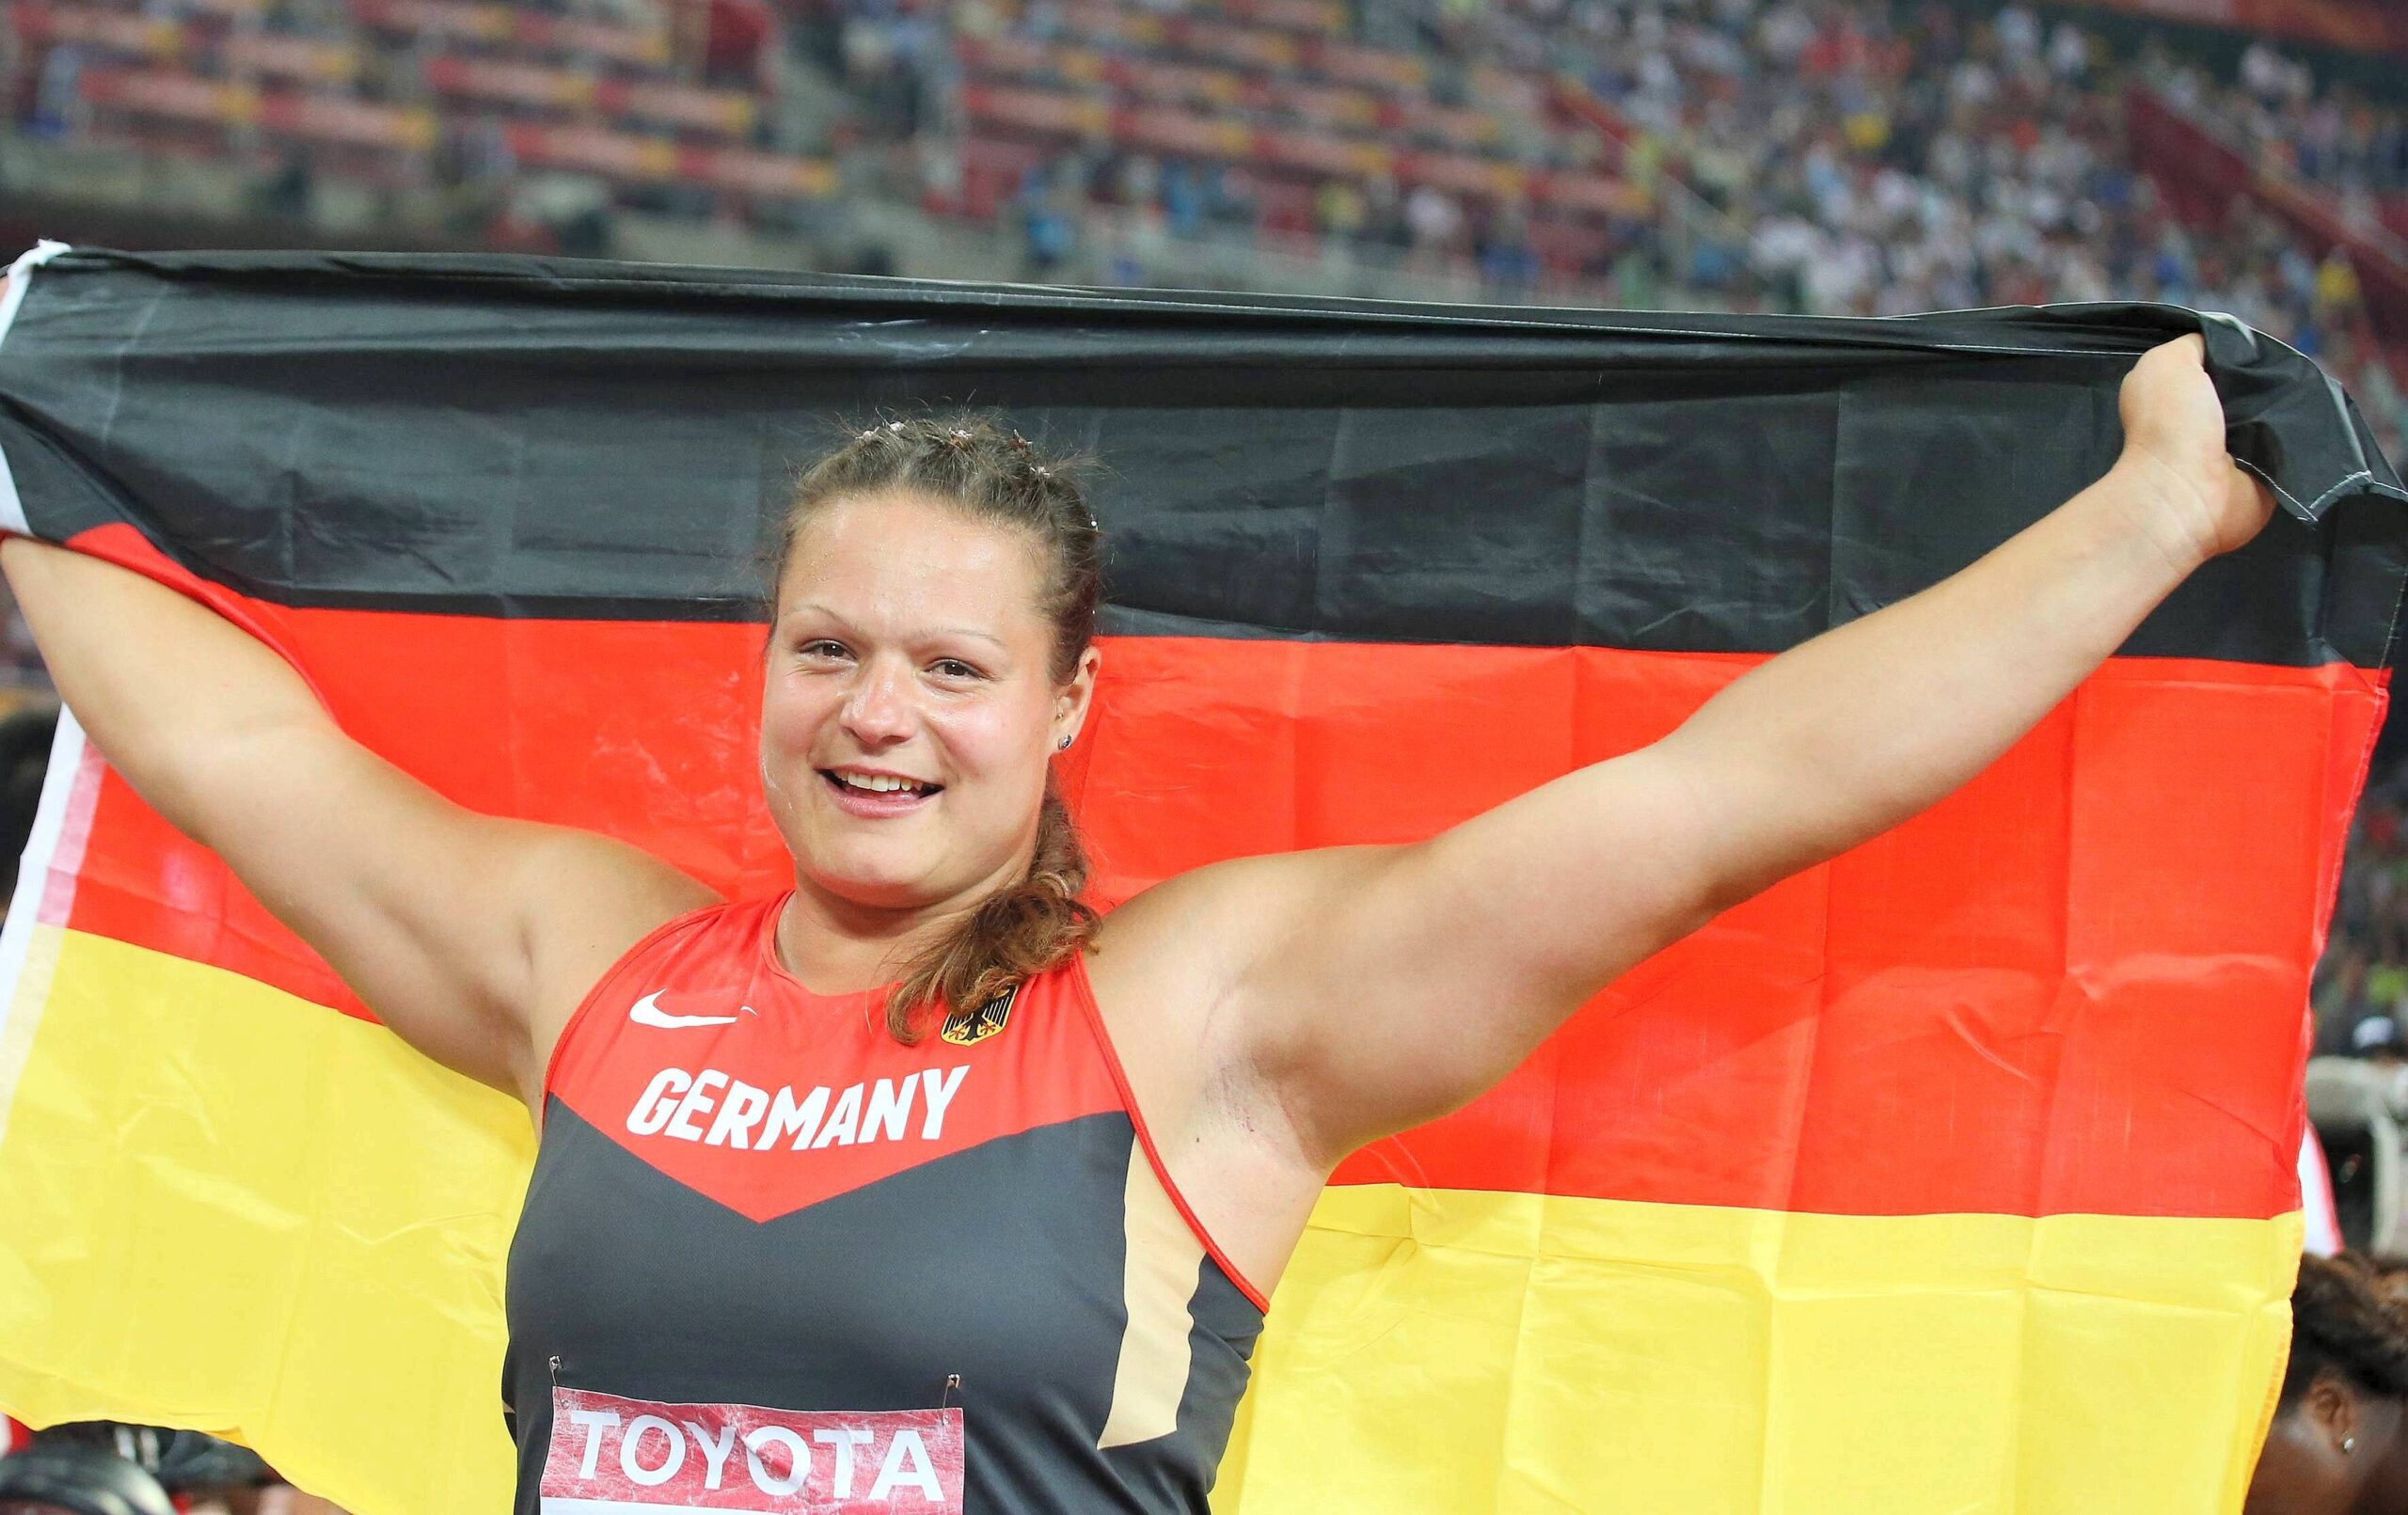 Bei der Leichtathletik-WM in Peking liefern die Sportler starke Leistungen und Emotionen. Für Deutschland holten unter anderem Kugelstoßerin Christina Schwanitz, ihr Kollege David Storl und Stabhochspringer Raphael Holzdeppe Medaillen. Alles überragender Star war 100-Meter-Weltmeister Usain Bolt.